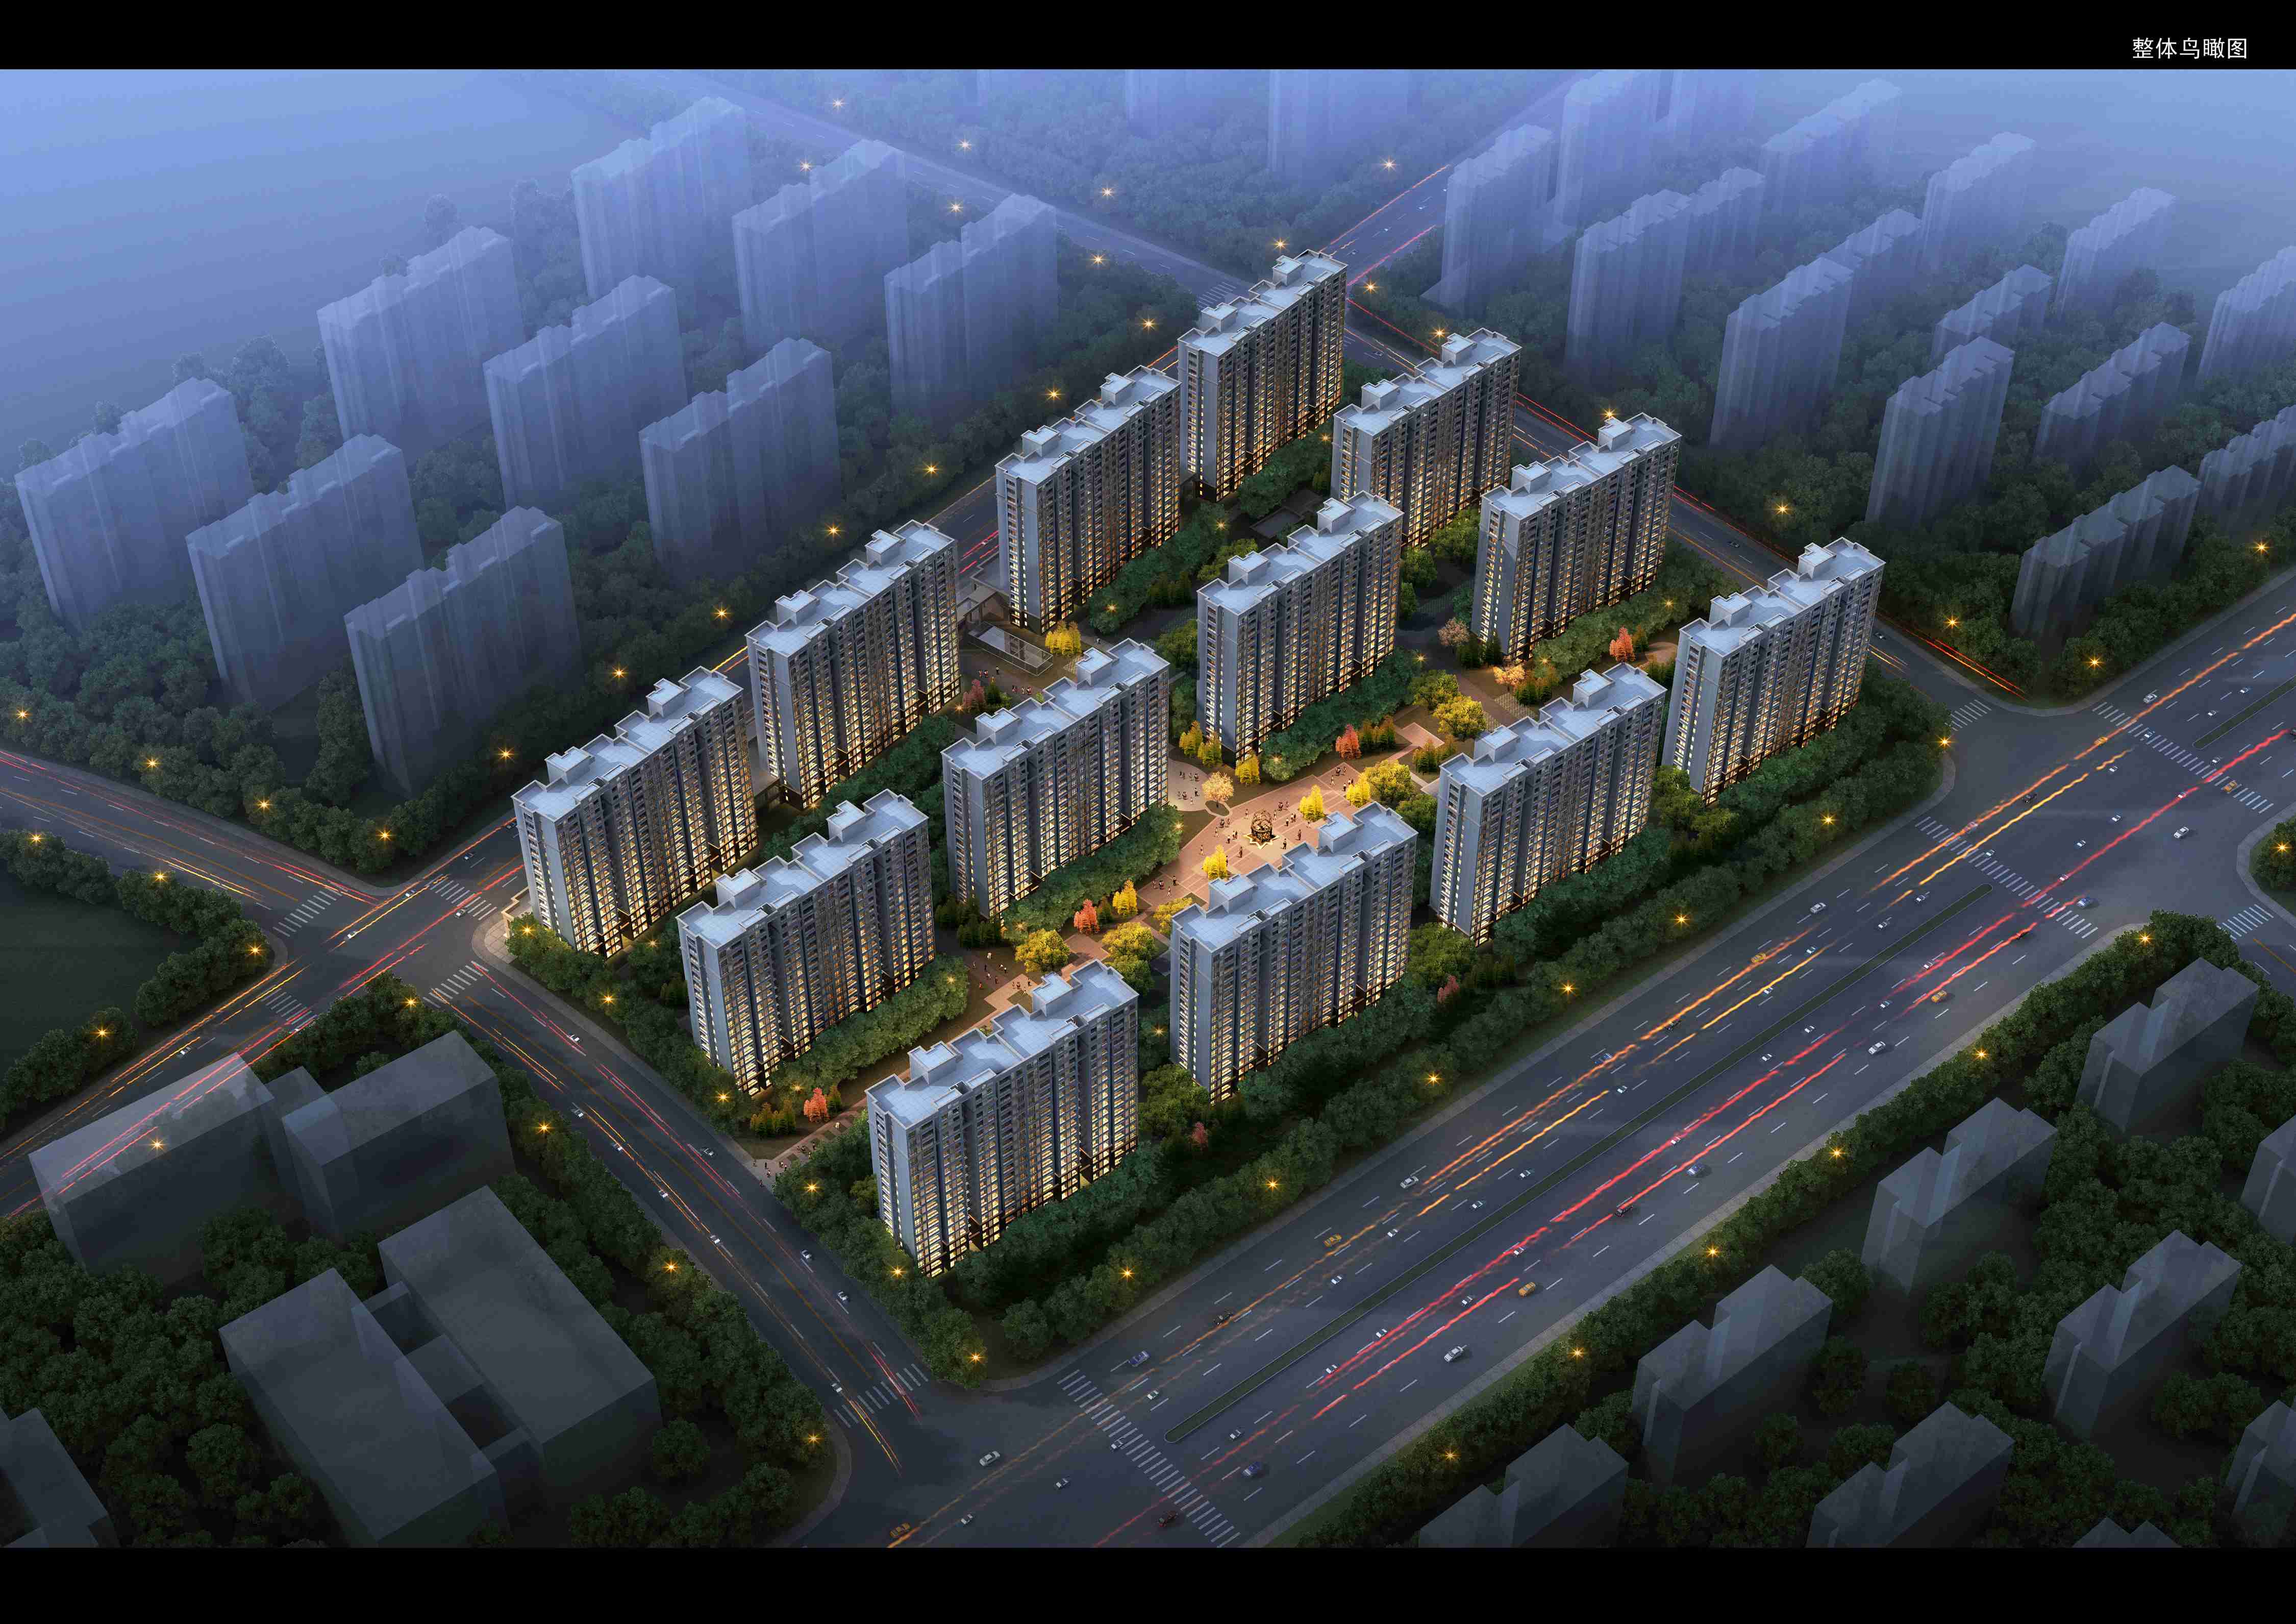 南京市沿河花园二期(经济适用房)项目管理